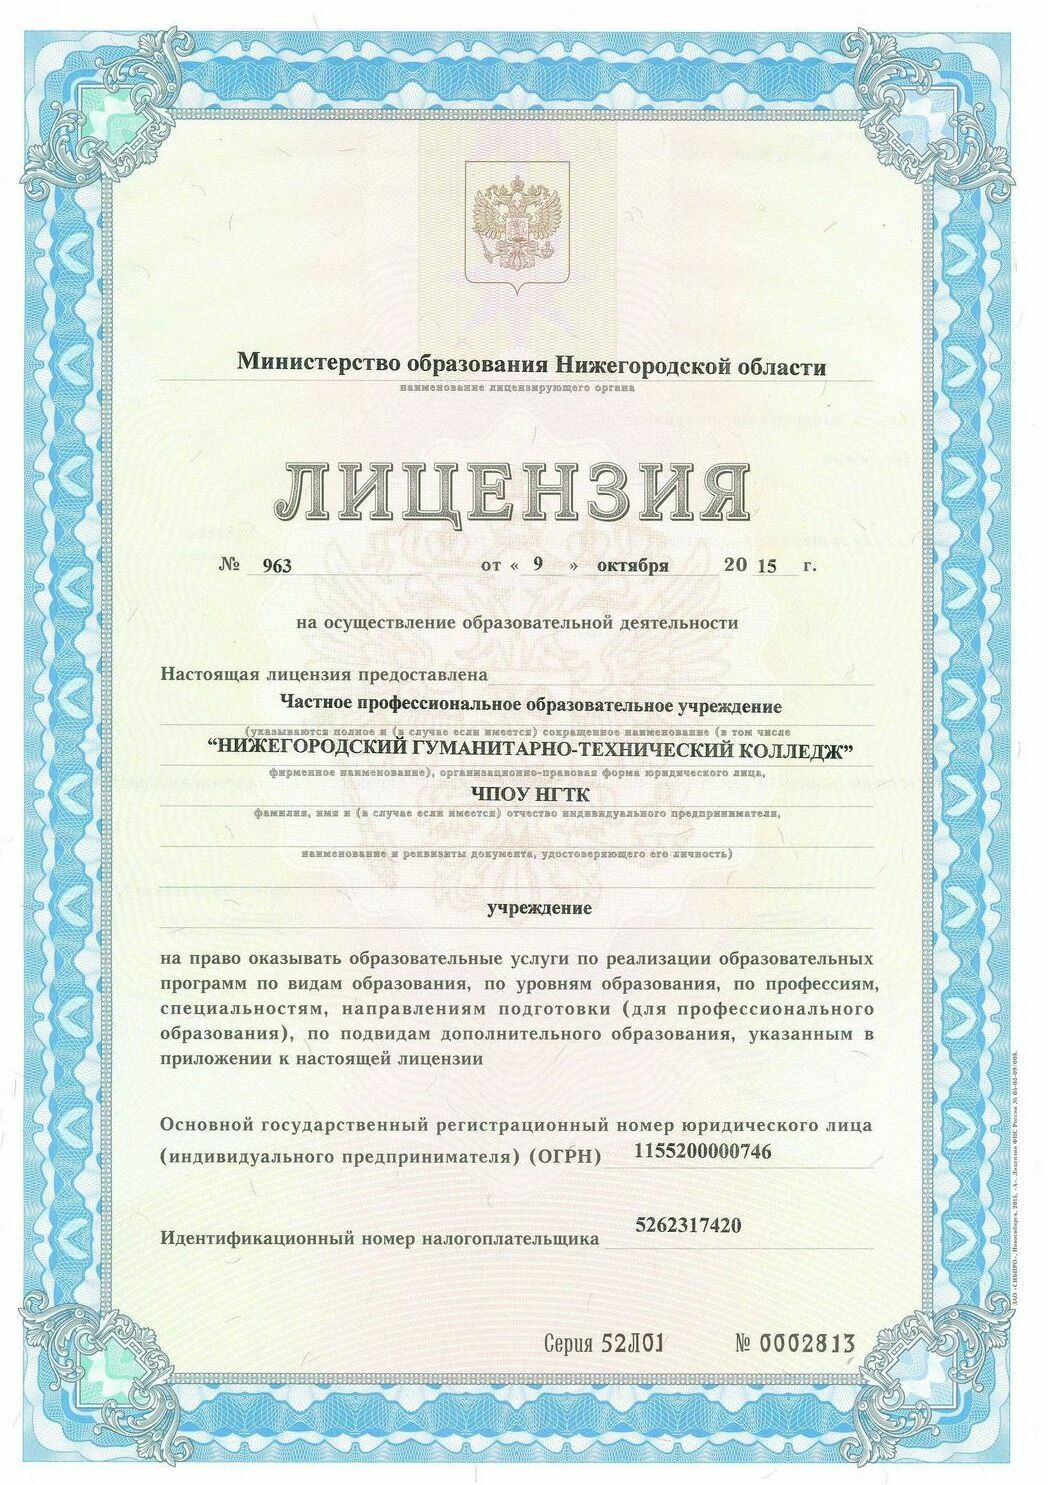 лицензия нижегородский гуманитарно-технический колледж